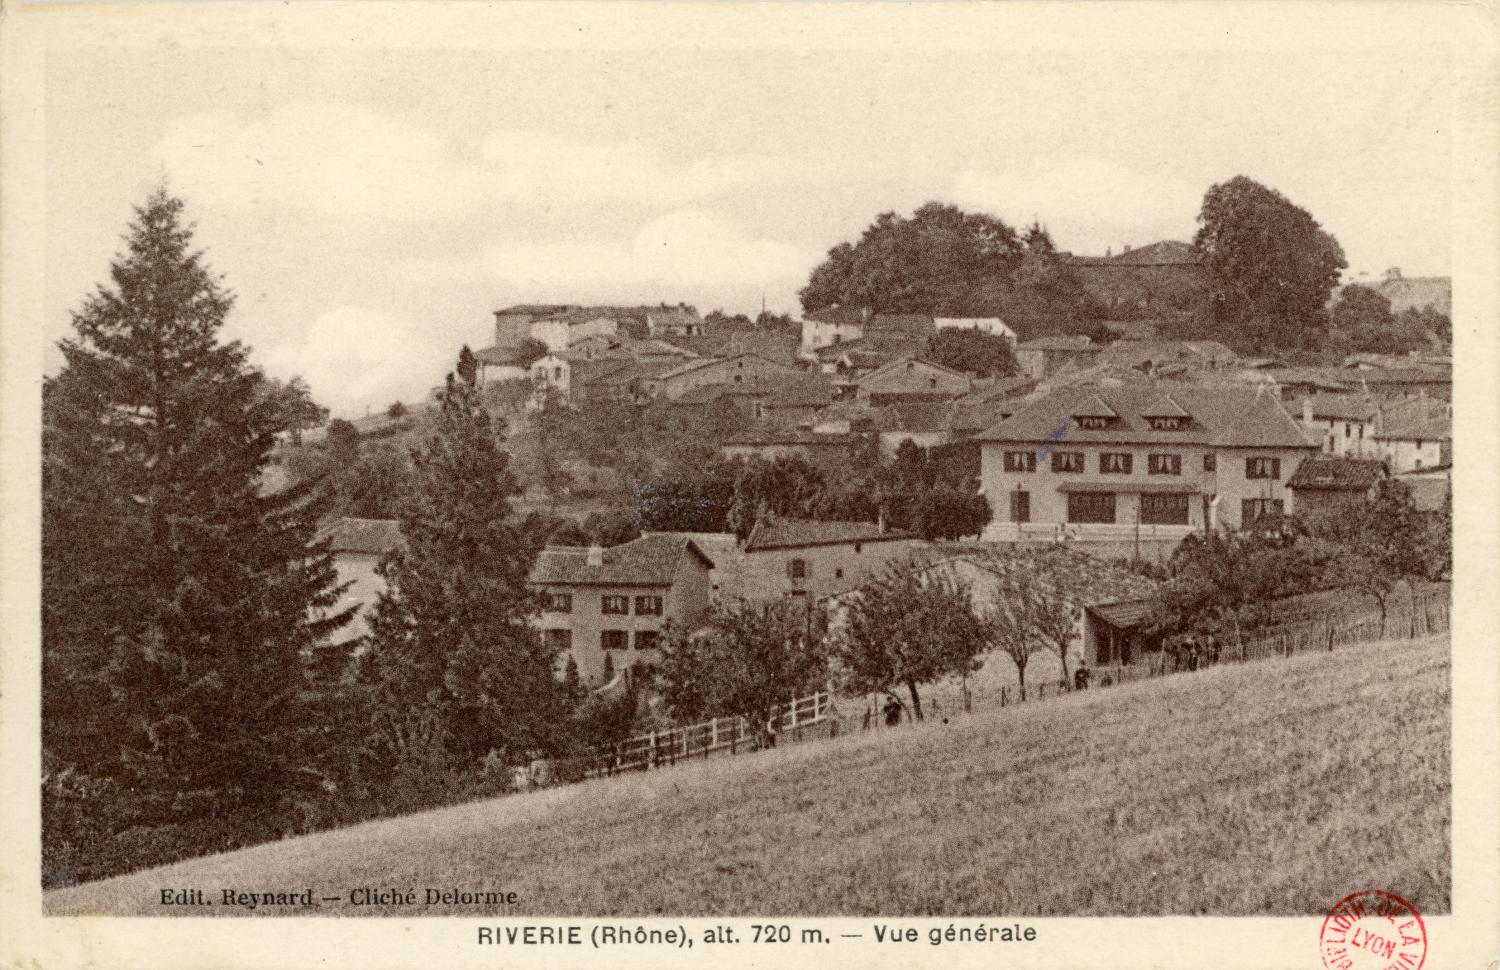 Riverie (Rhône), alt. 720 m. - Vue générale